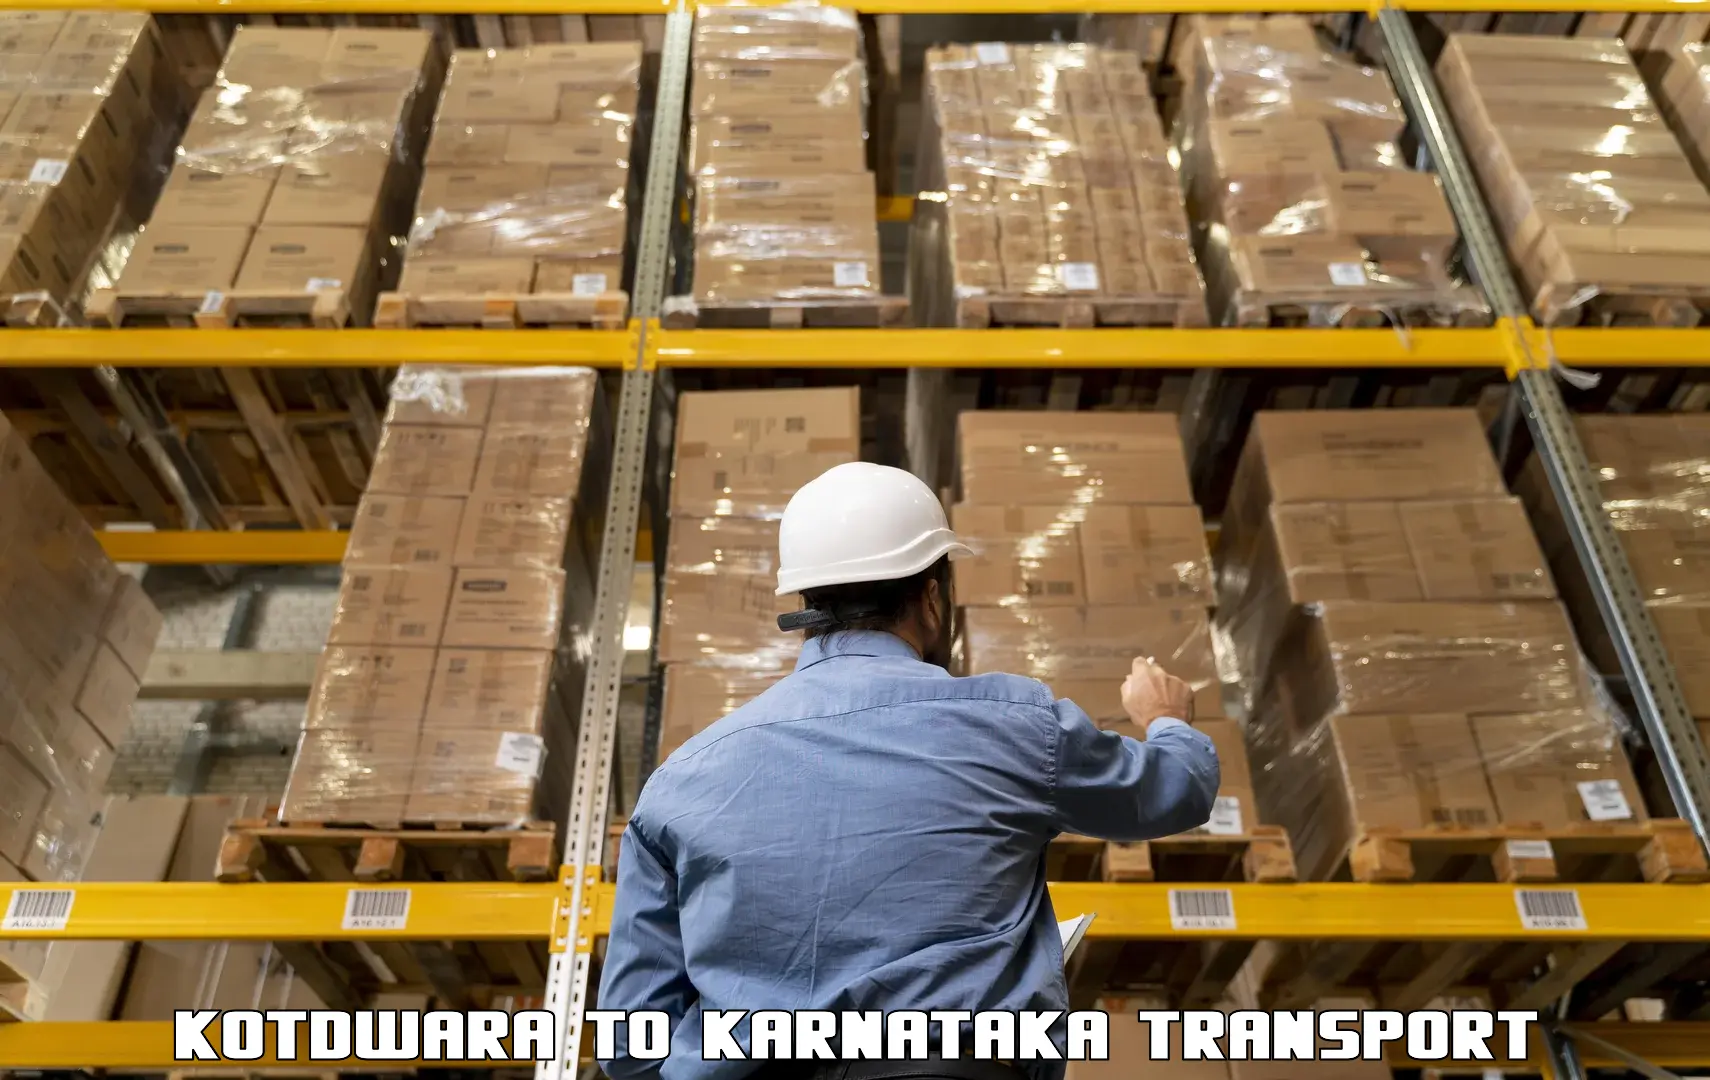 Parcel transport services Kotdwara to Aland Kalaburagi